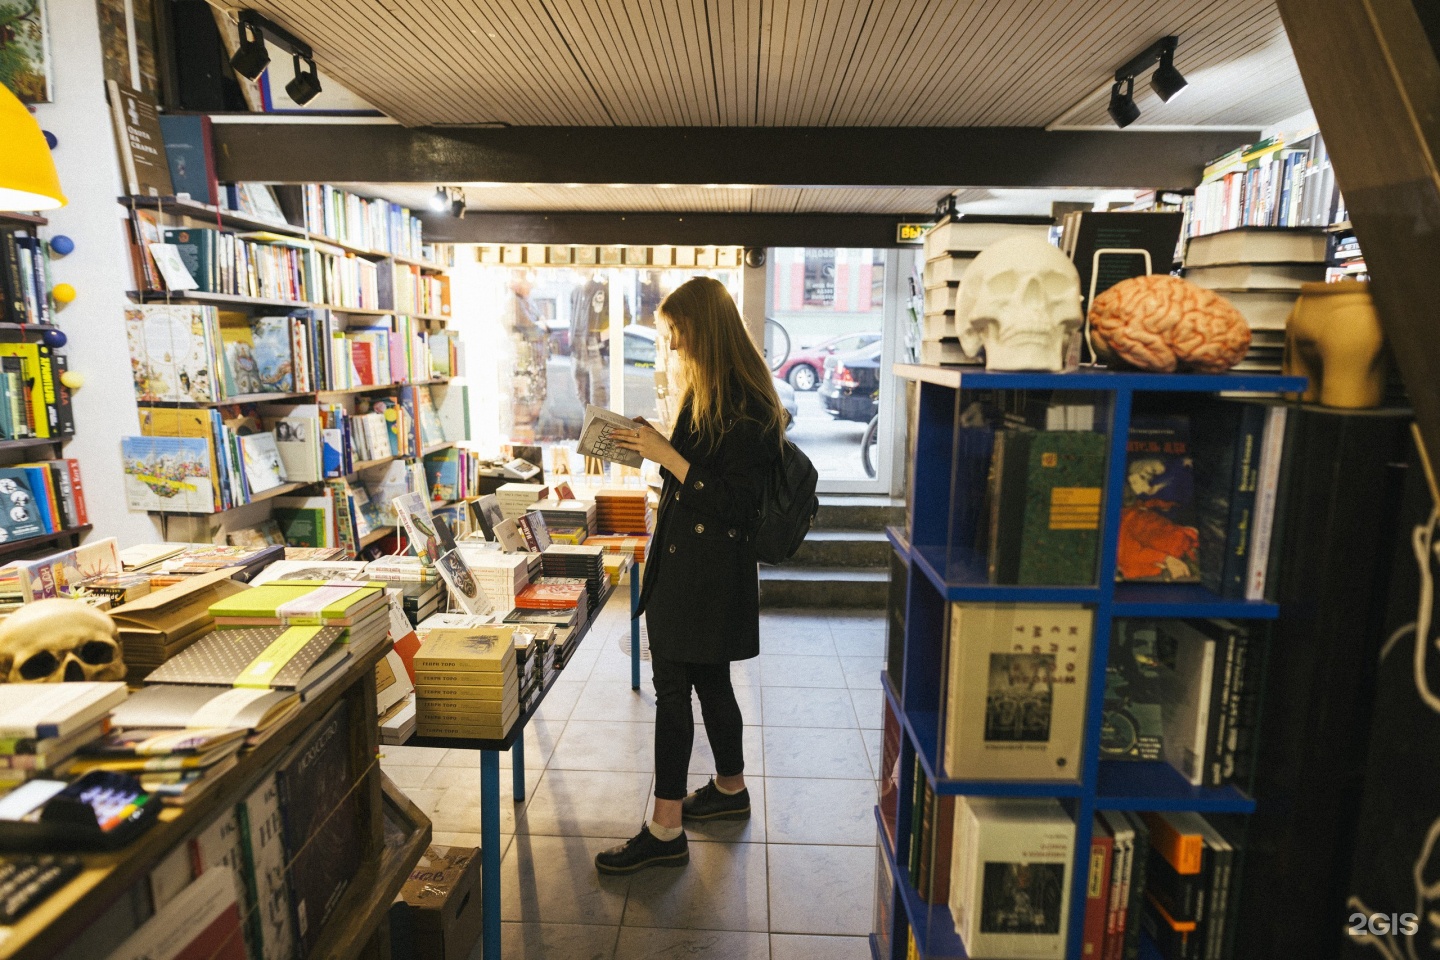 Самый красивый книжный магазин в санкт петербурге